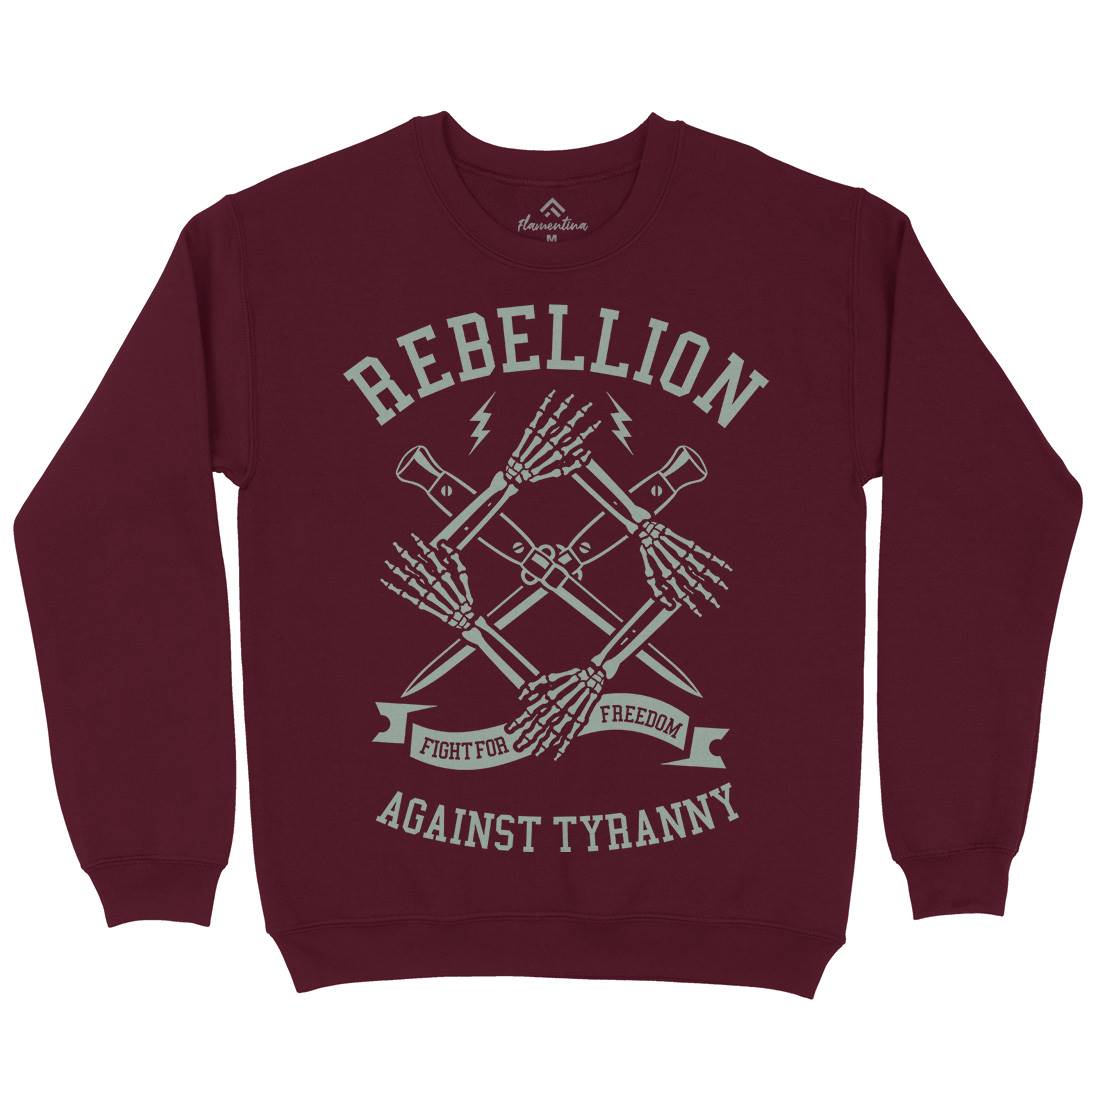 Rebellion Kids Crew Neck Sweatshirt Illuminati A266